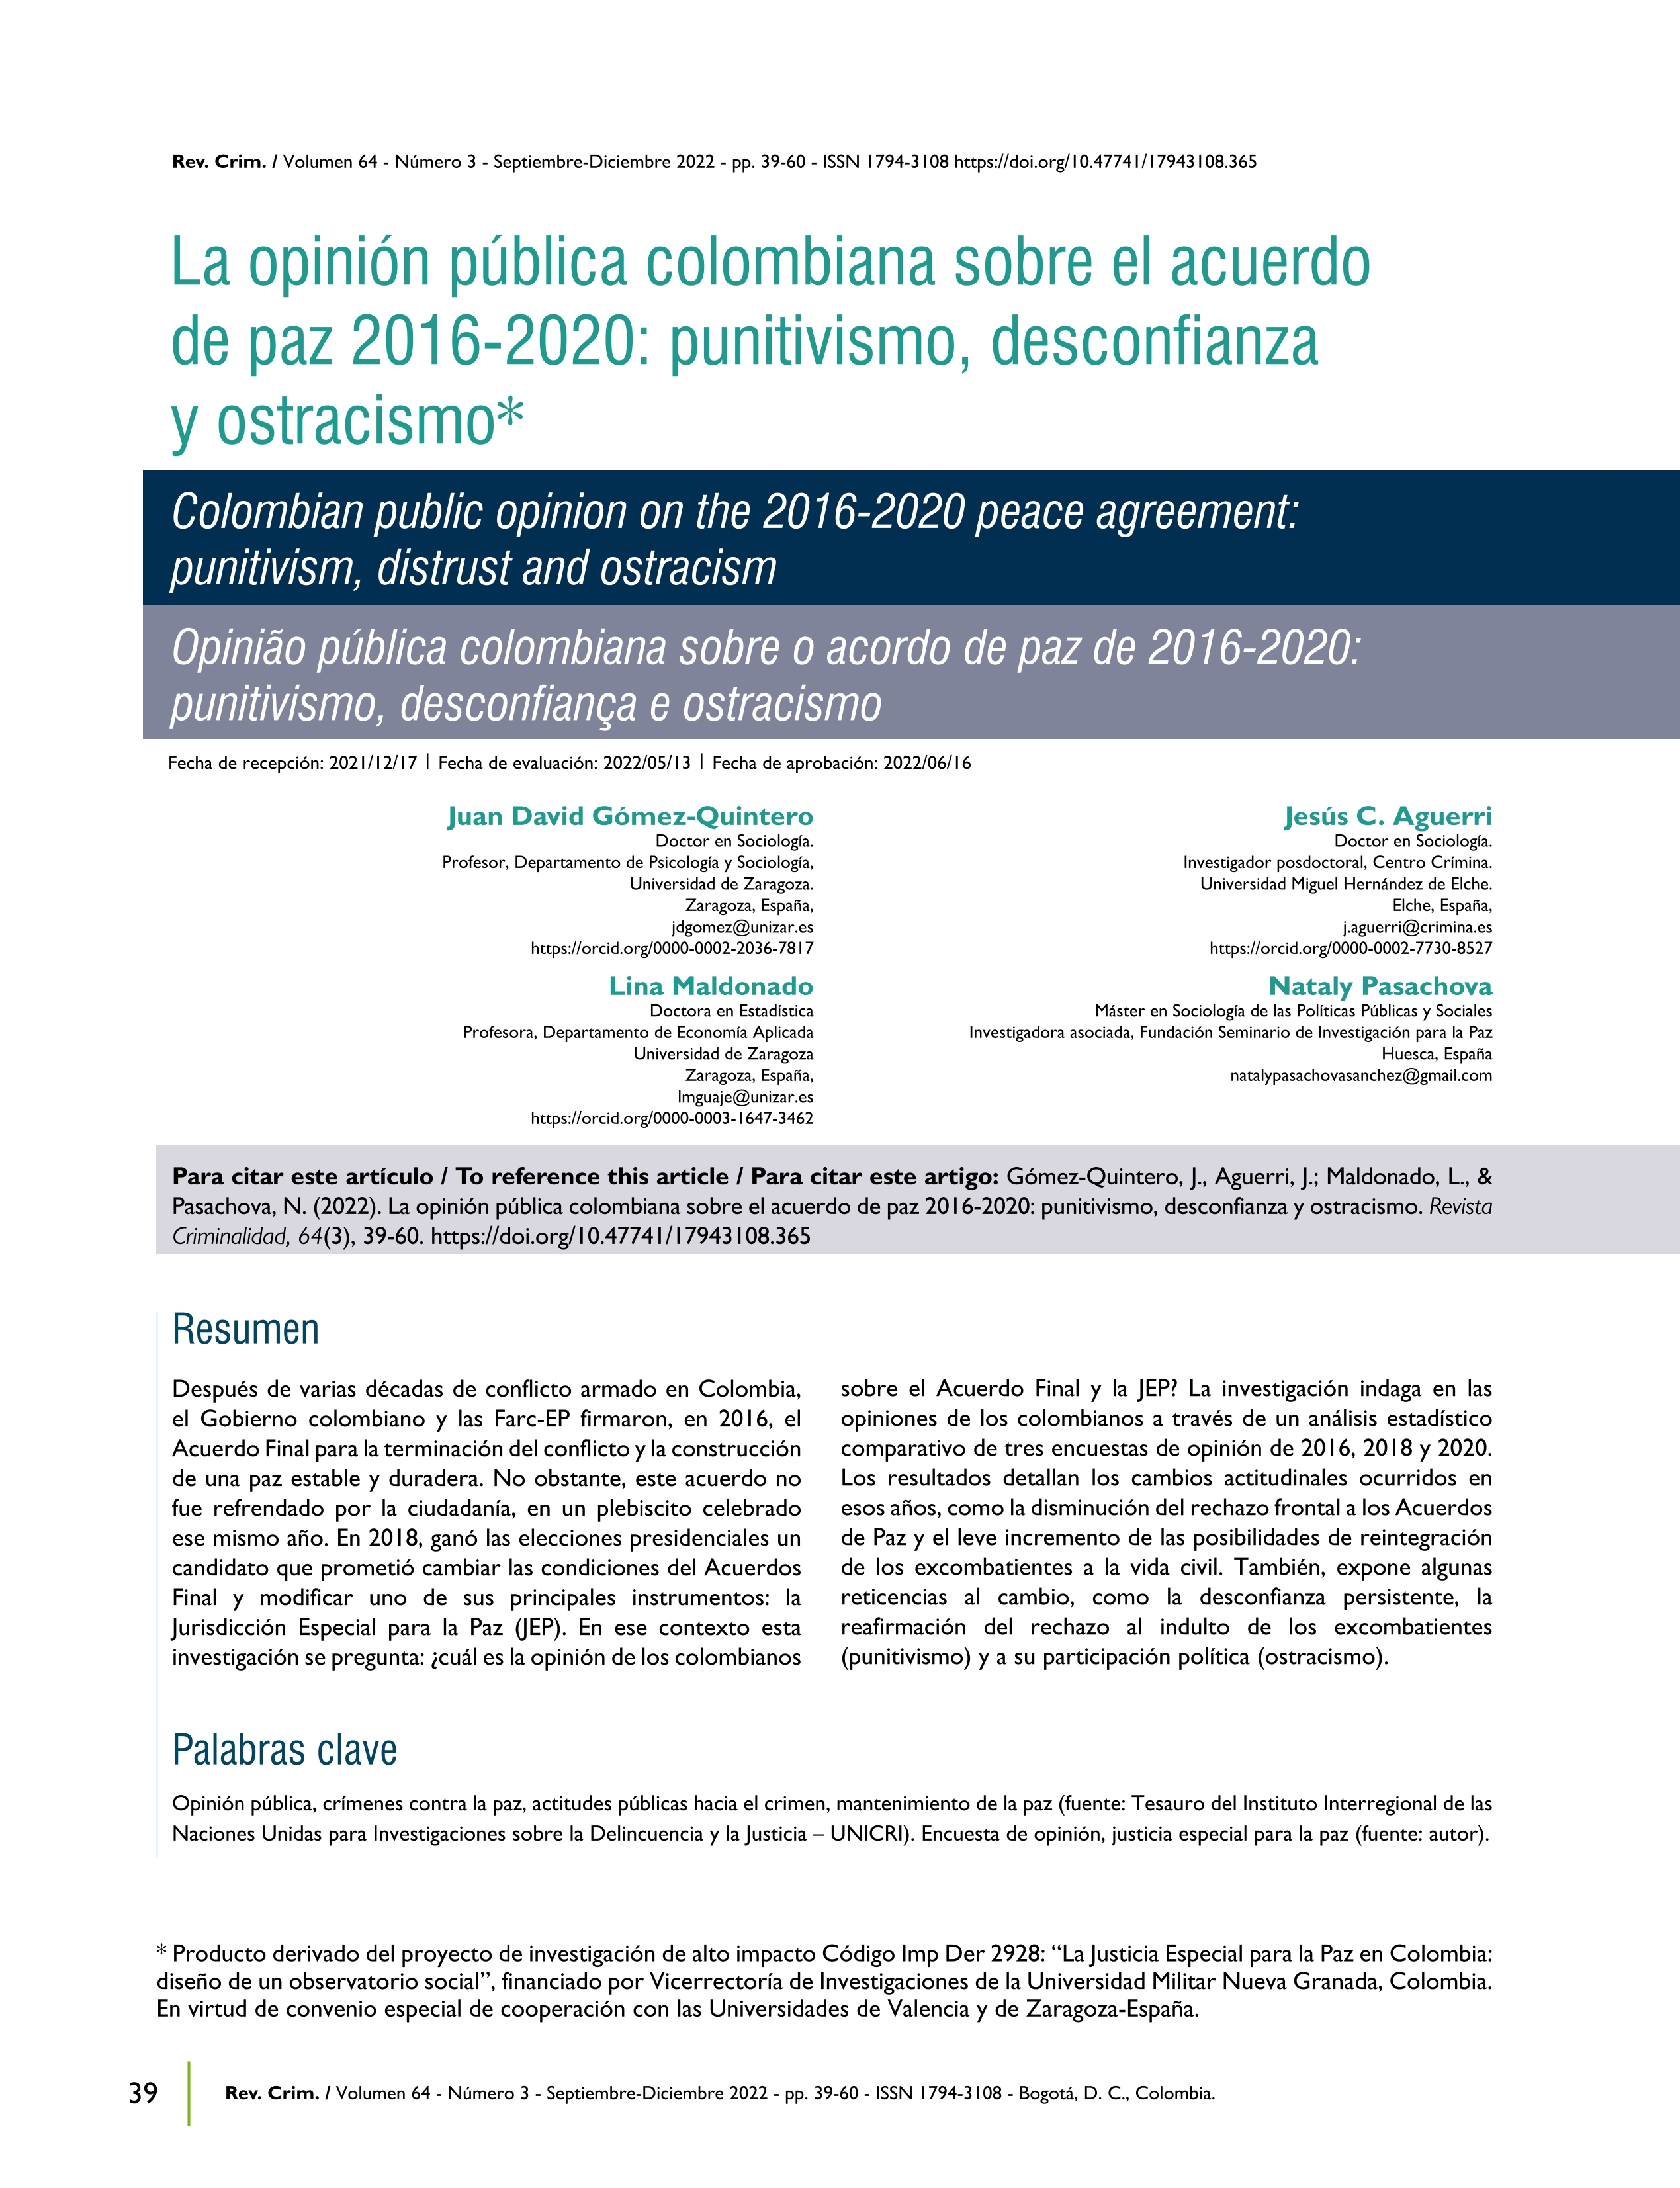 La opinión pública colombiana sobre el acuerdo de paz 2016-2020: punitivismo, desconfianza y ostracismo